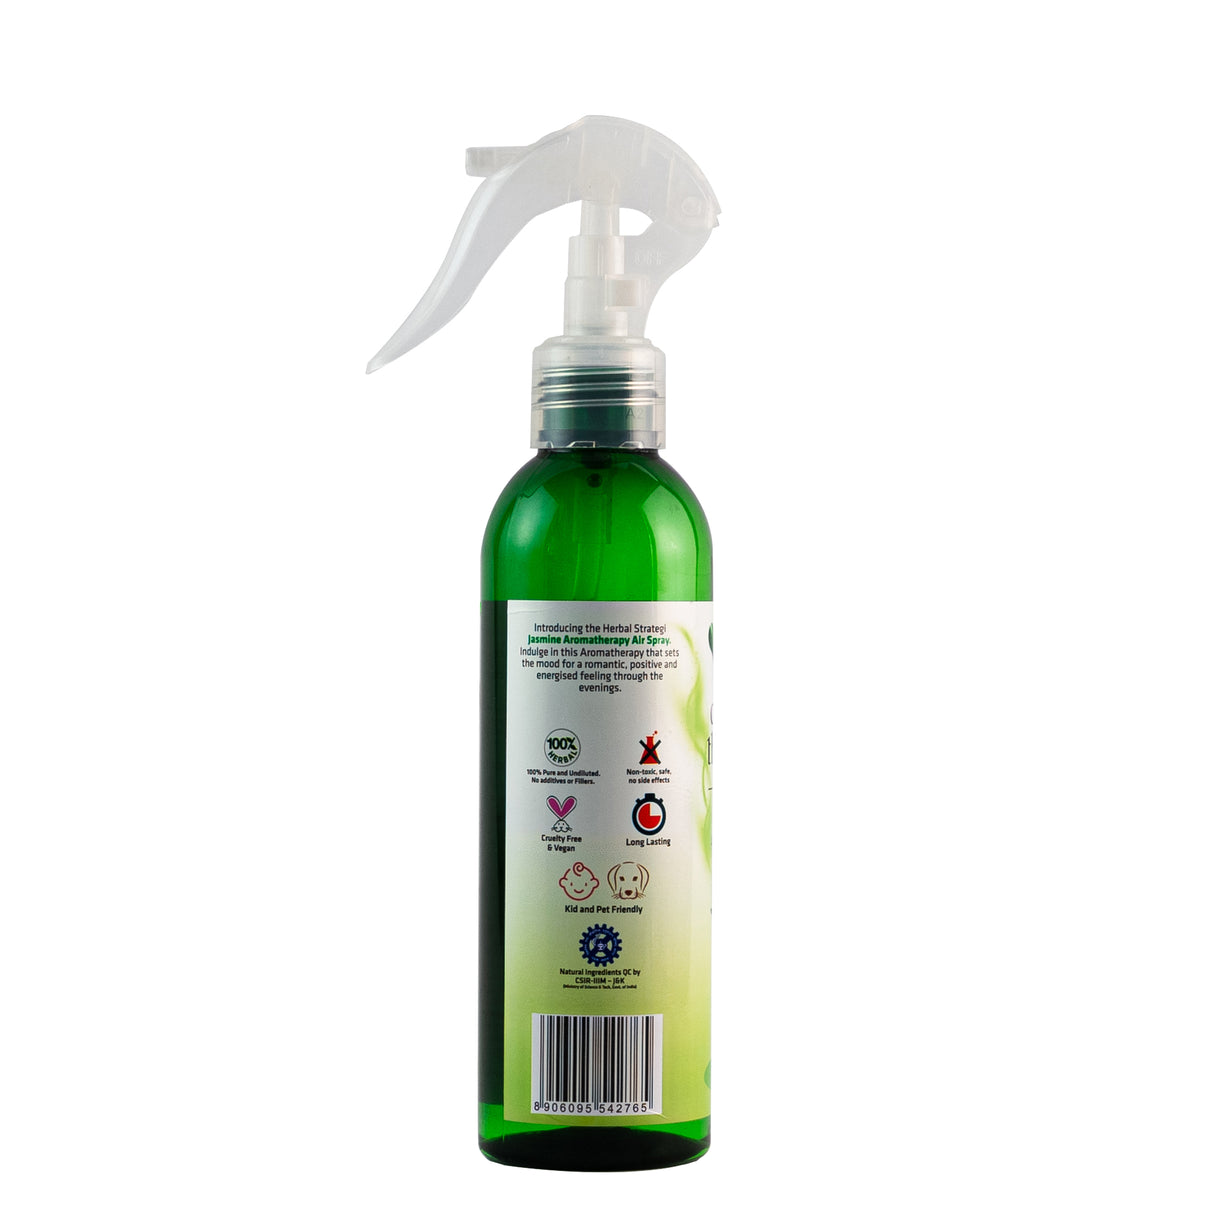 Aroma Therapy Spray - Jasmine - 200 ml